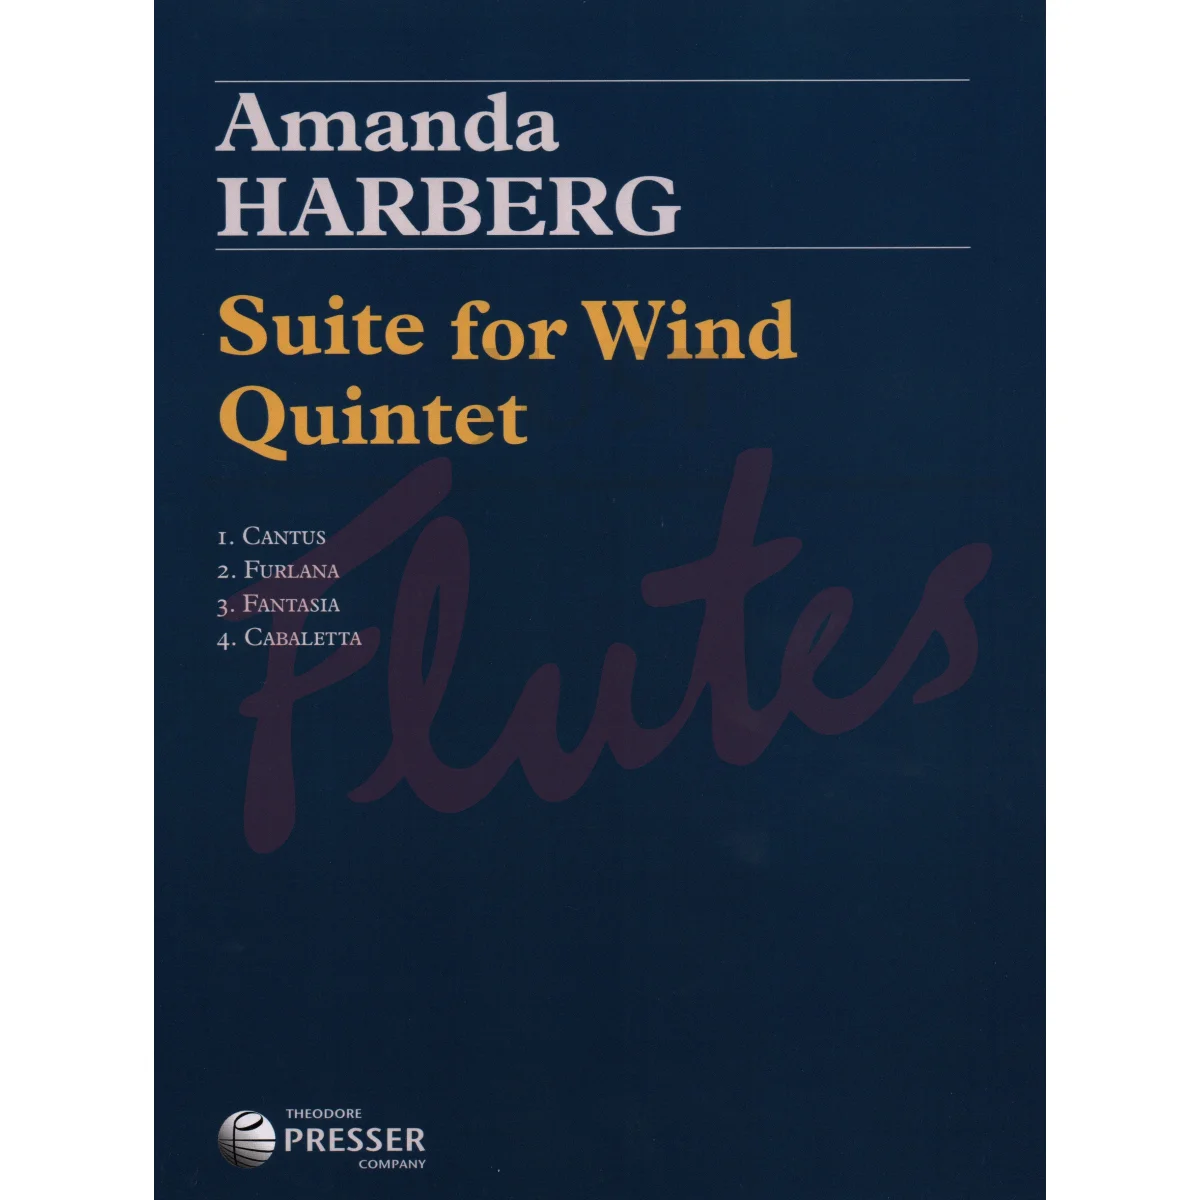 Suite for Wind Quintet